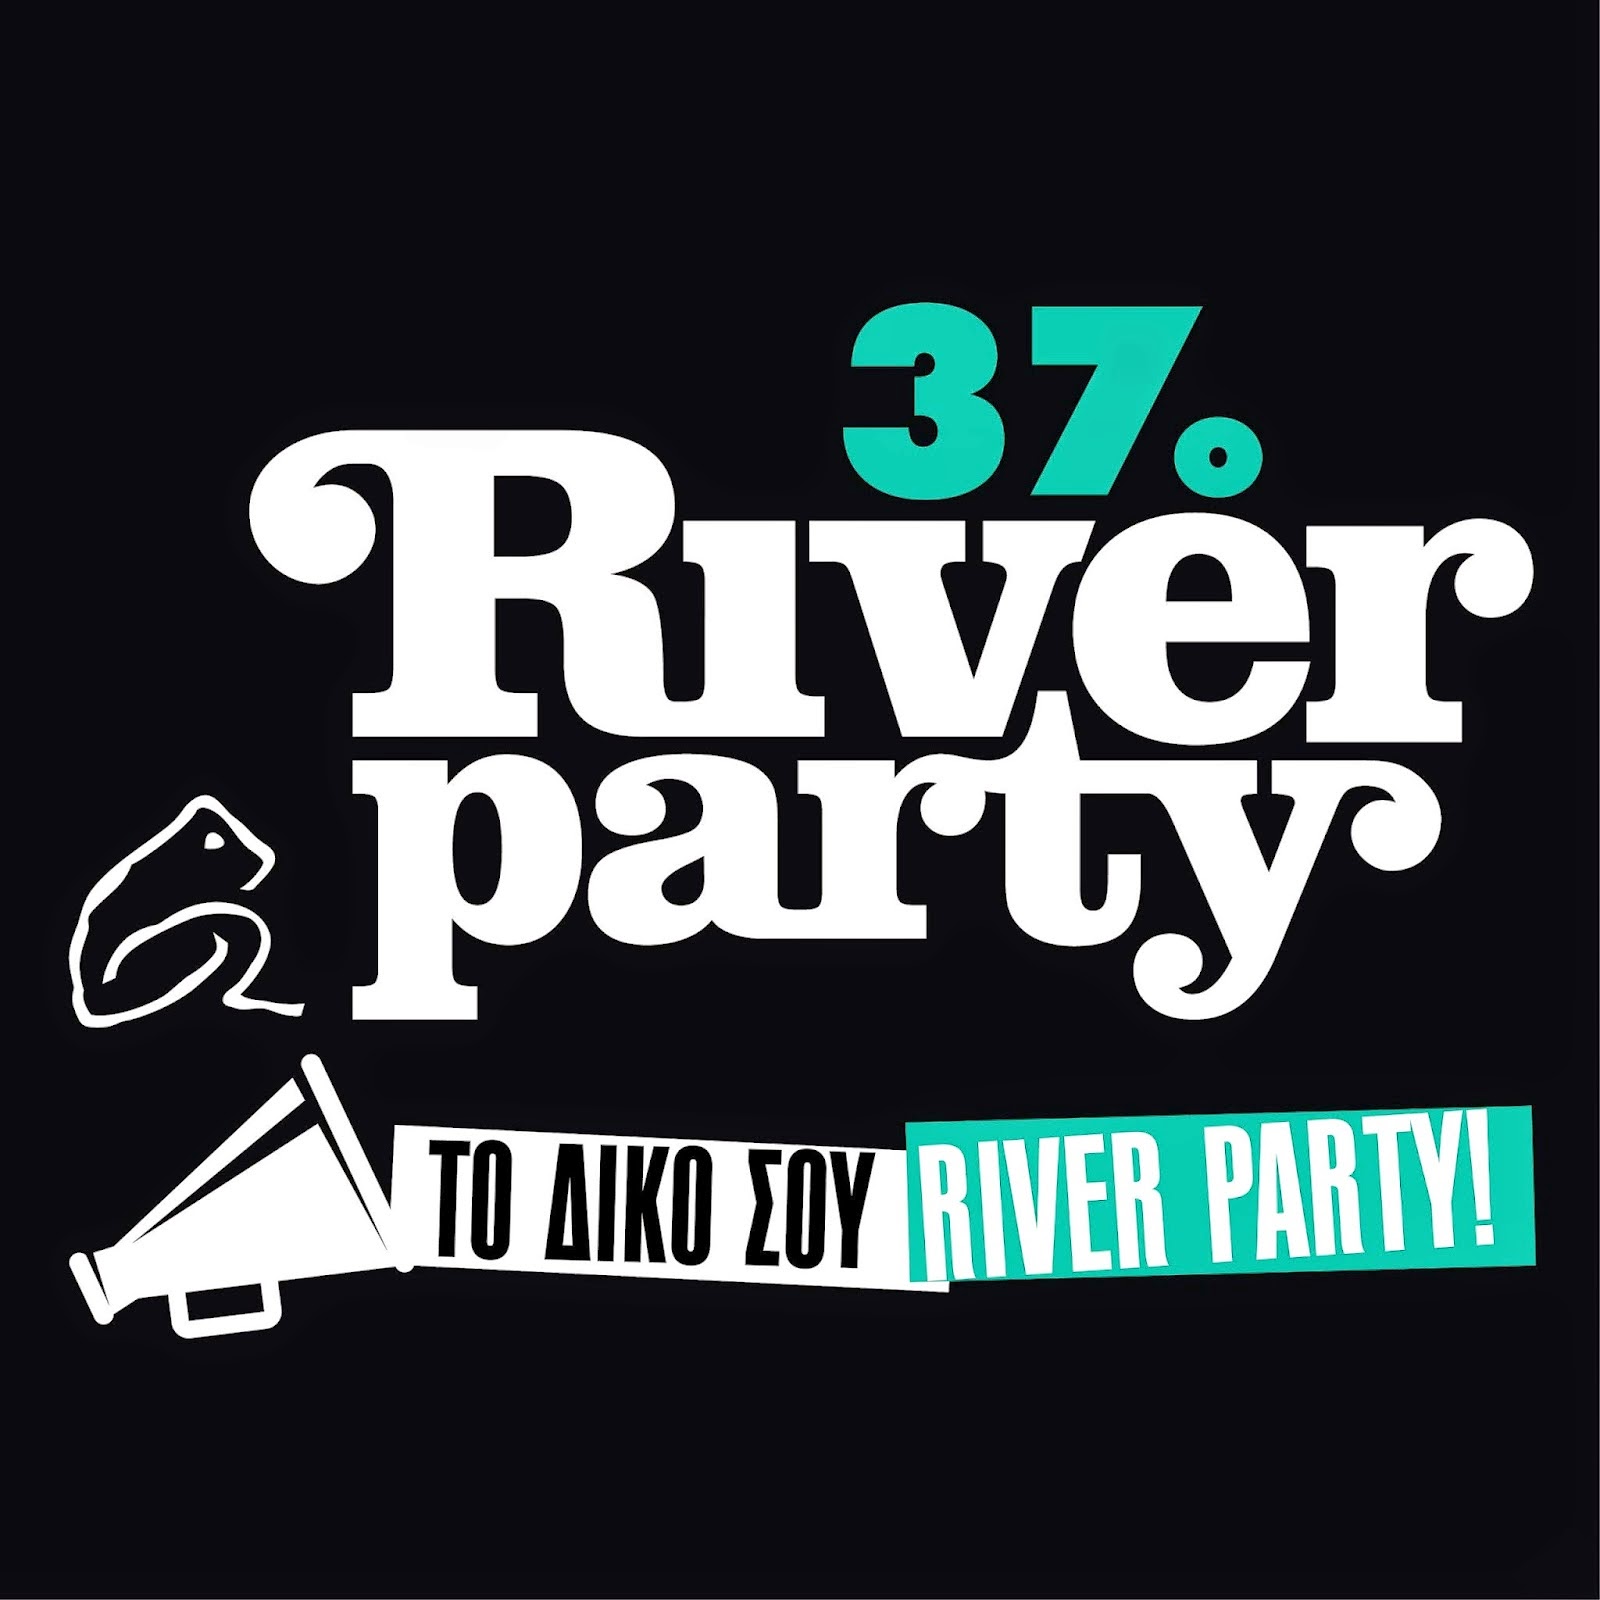 Eκπτωτικά εισιτήρια River Party 